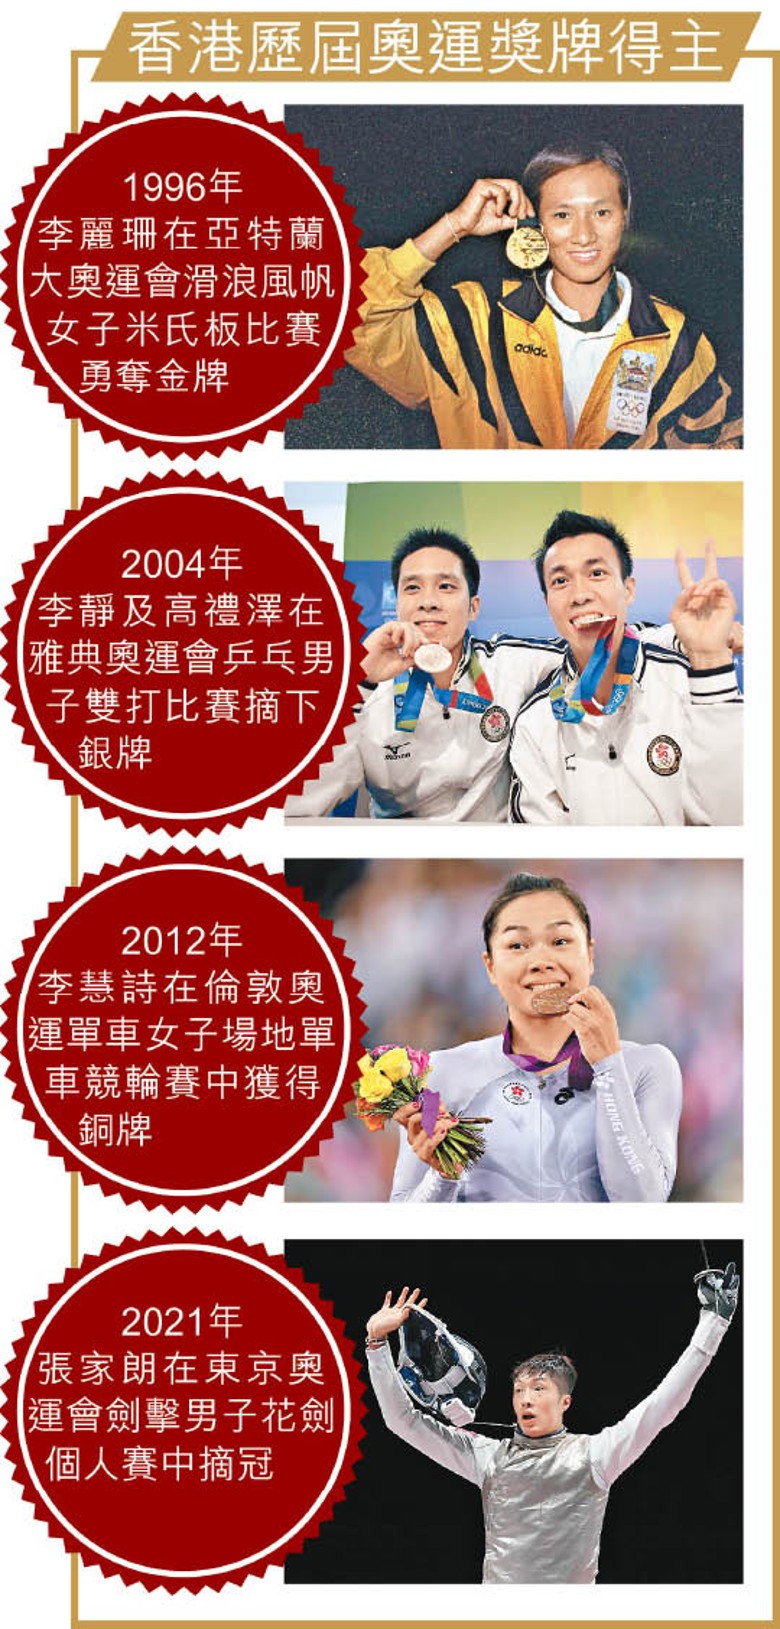 香港歷屆奧運獎牌得主